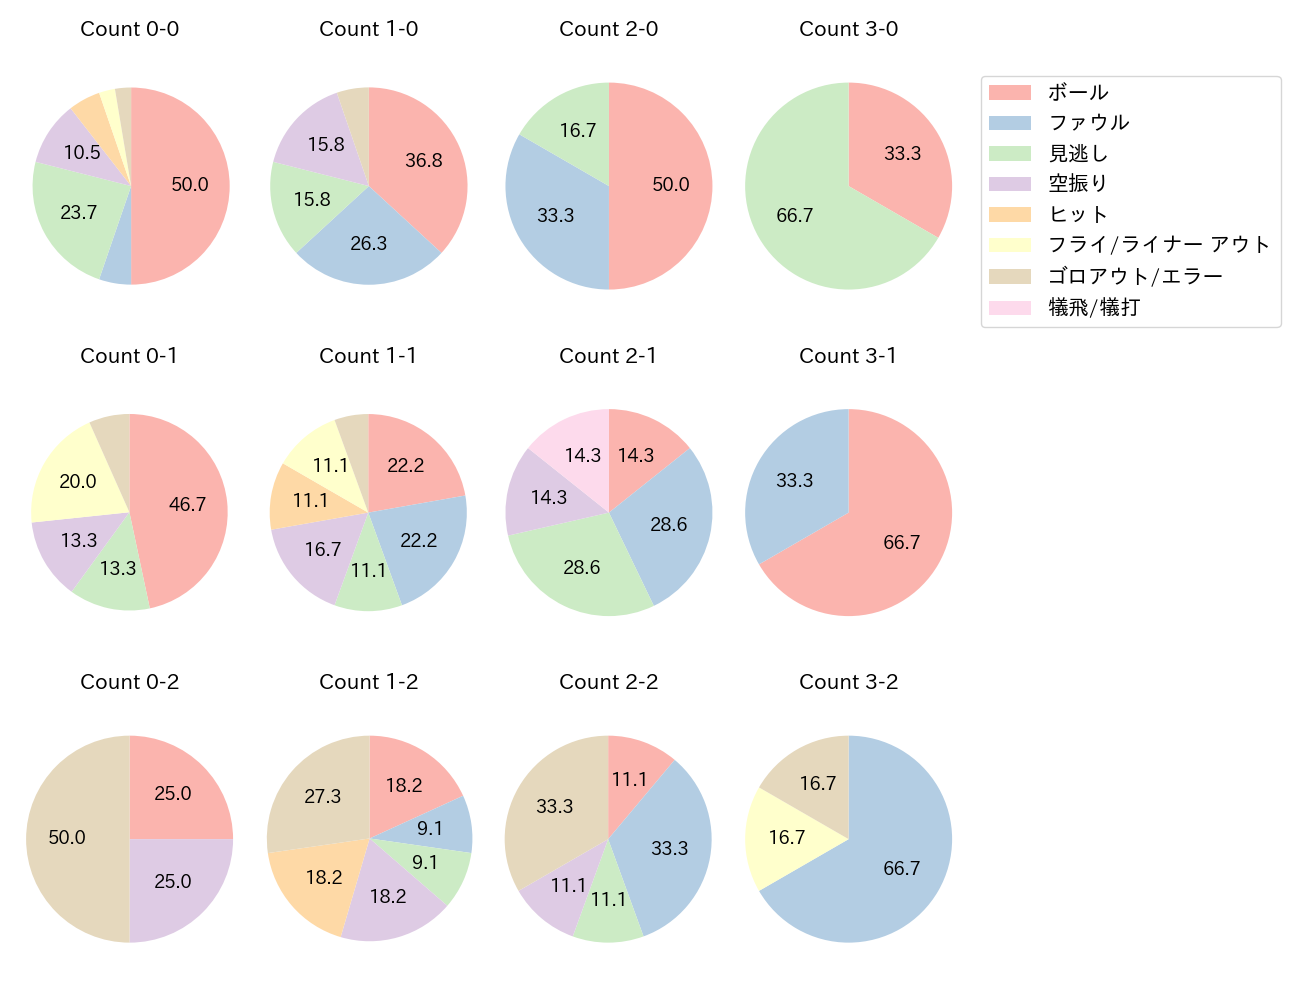 坂口 智隆の球数分布(2021年9月)